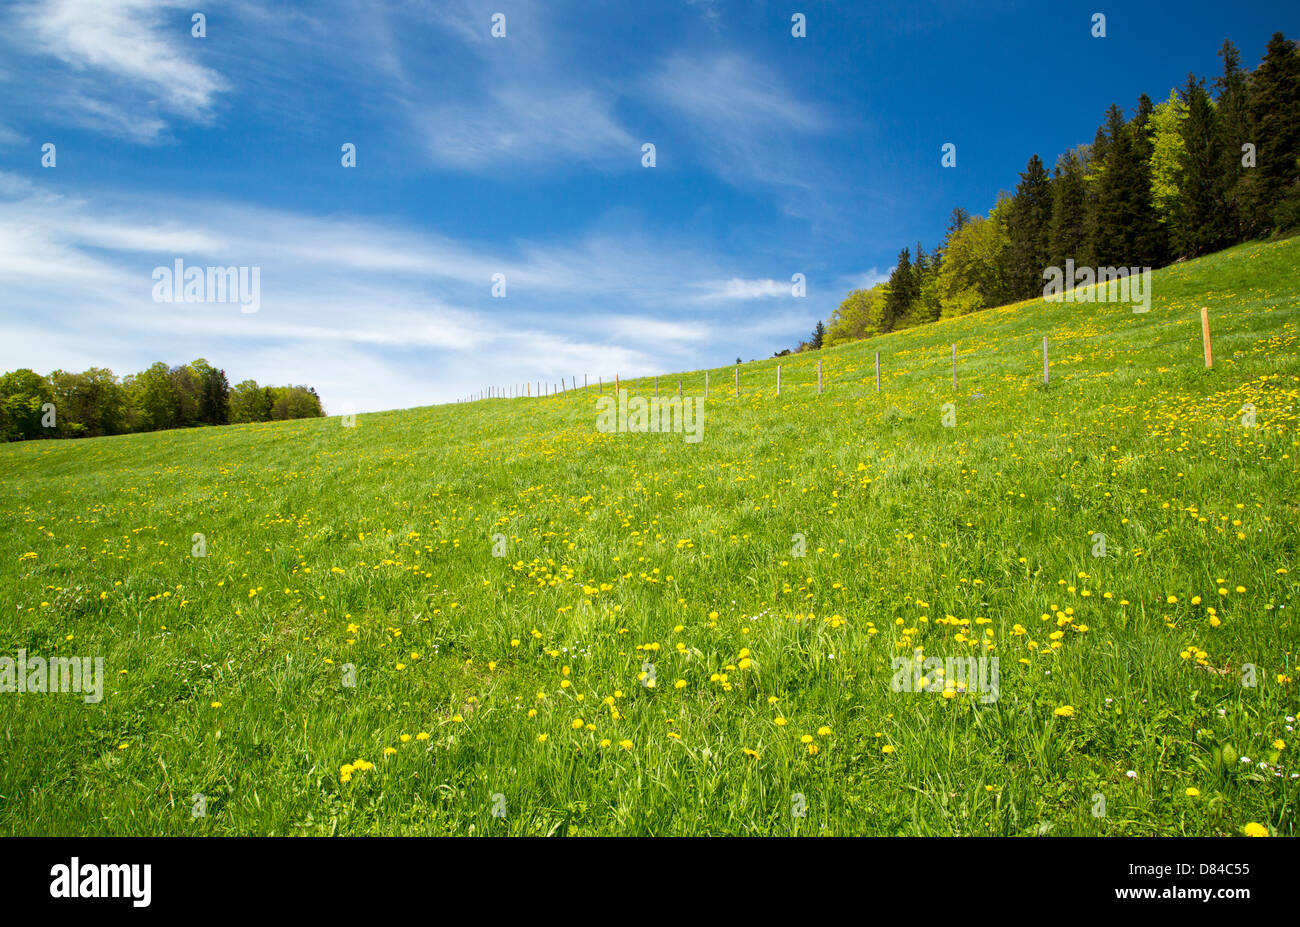 A sloping swiss landscape taken in Baselland, Switzerland Stock Photo